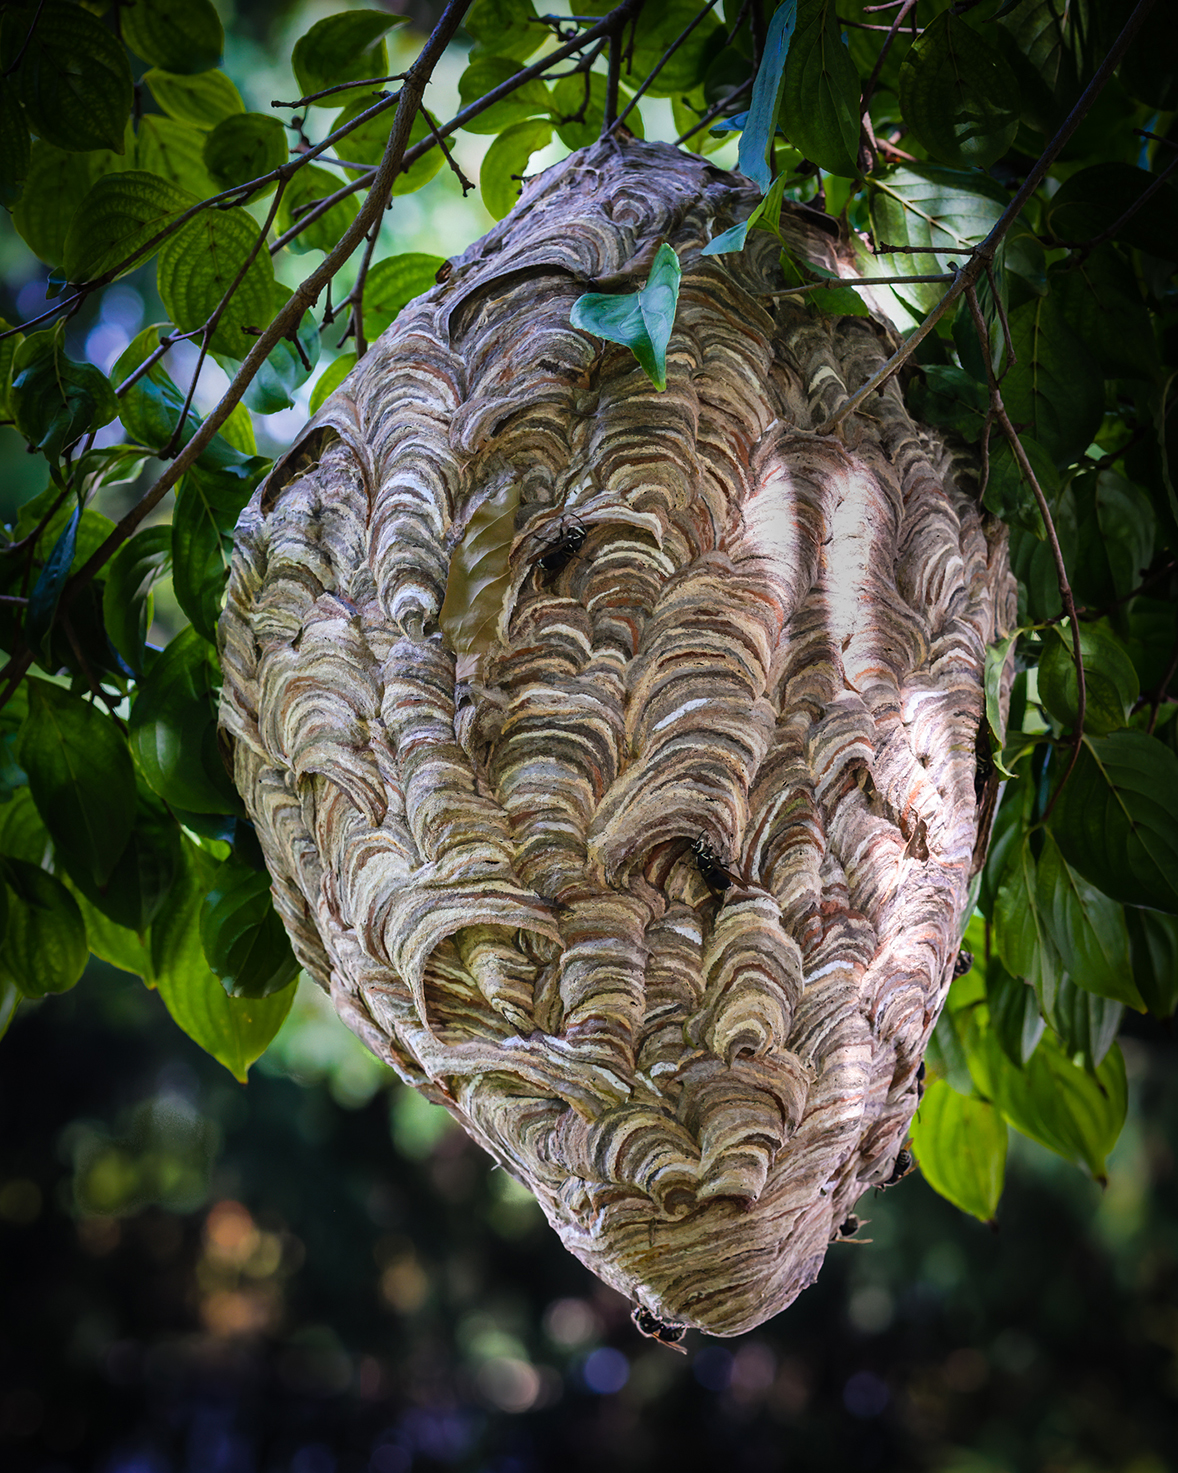 Duane Erdmann - Wasp nest wallpaper - Jennersville, PA